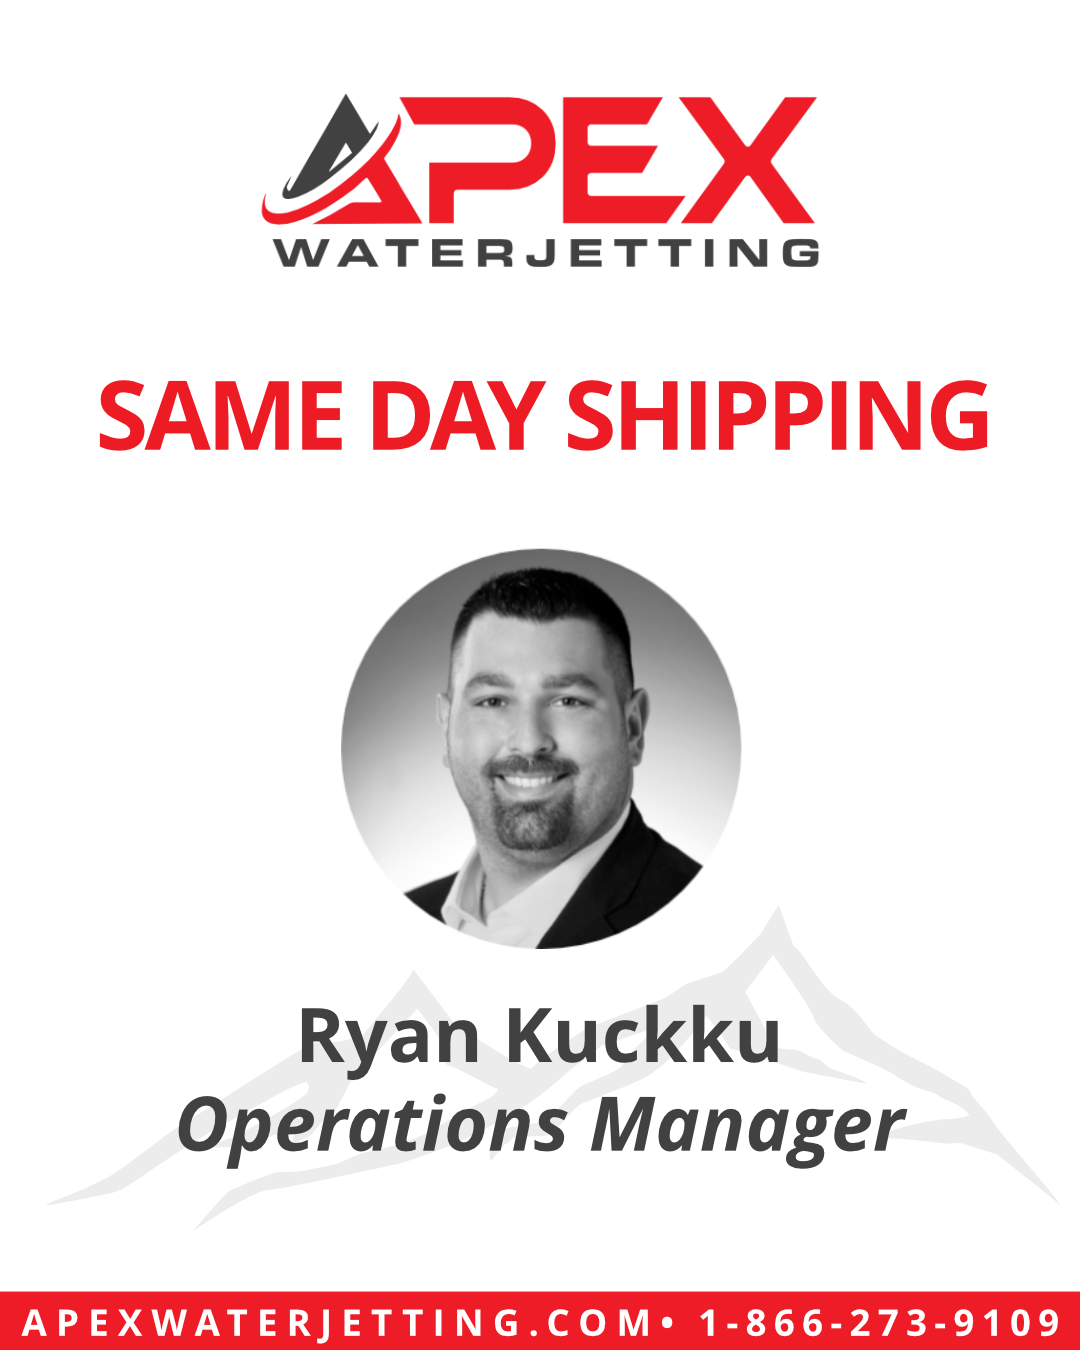 APEX Waterjetting Same Day Shipping Ryan Kuckku